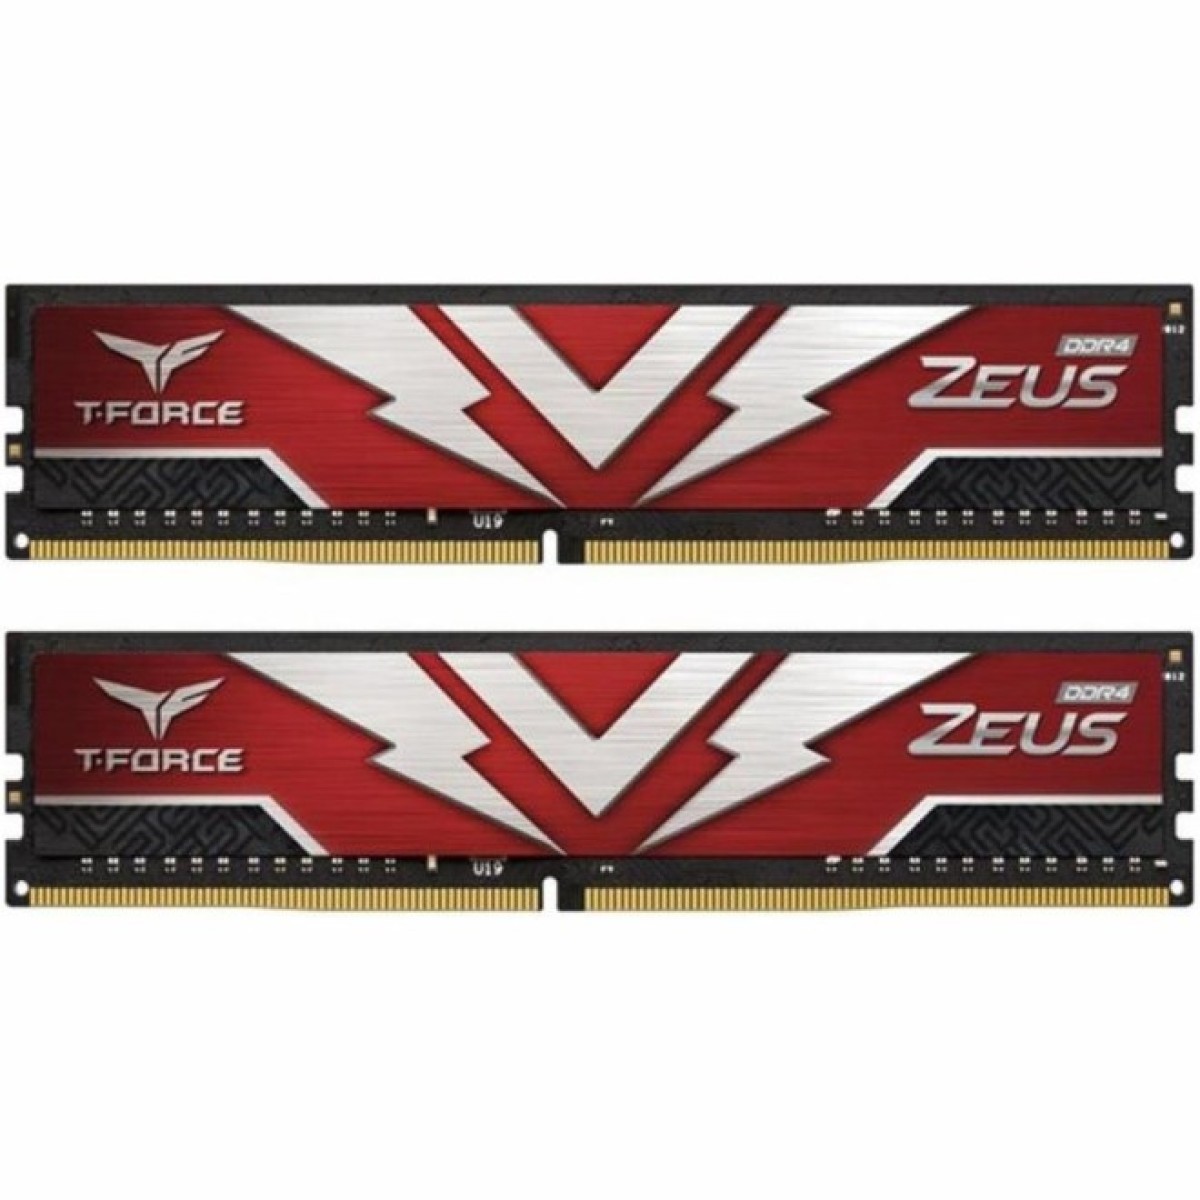 Модуль памяти для компьютера DDR4 16GB (2x8GB) 3000 MHz T-Force Zeus Red Team (TTZD416G3000HC16CDC01) 256_256.jpg